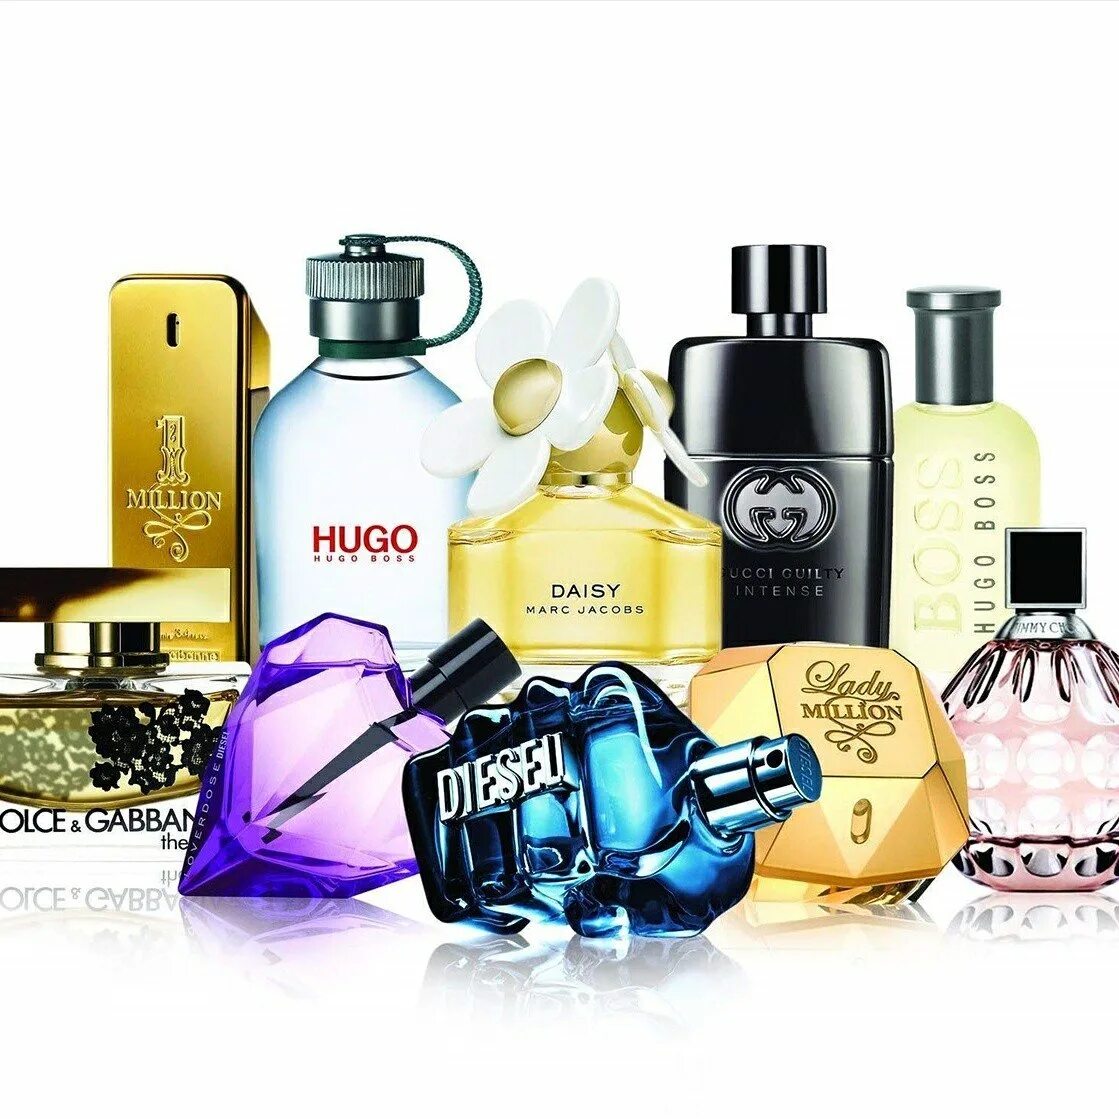 Парфюм. Косметика и парфюмерия. Элитная парфюмерия. Мировые бренды парфюмерии.